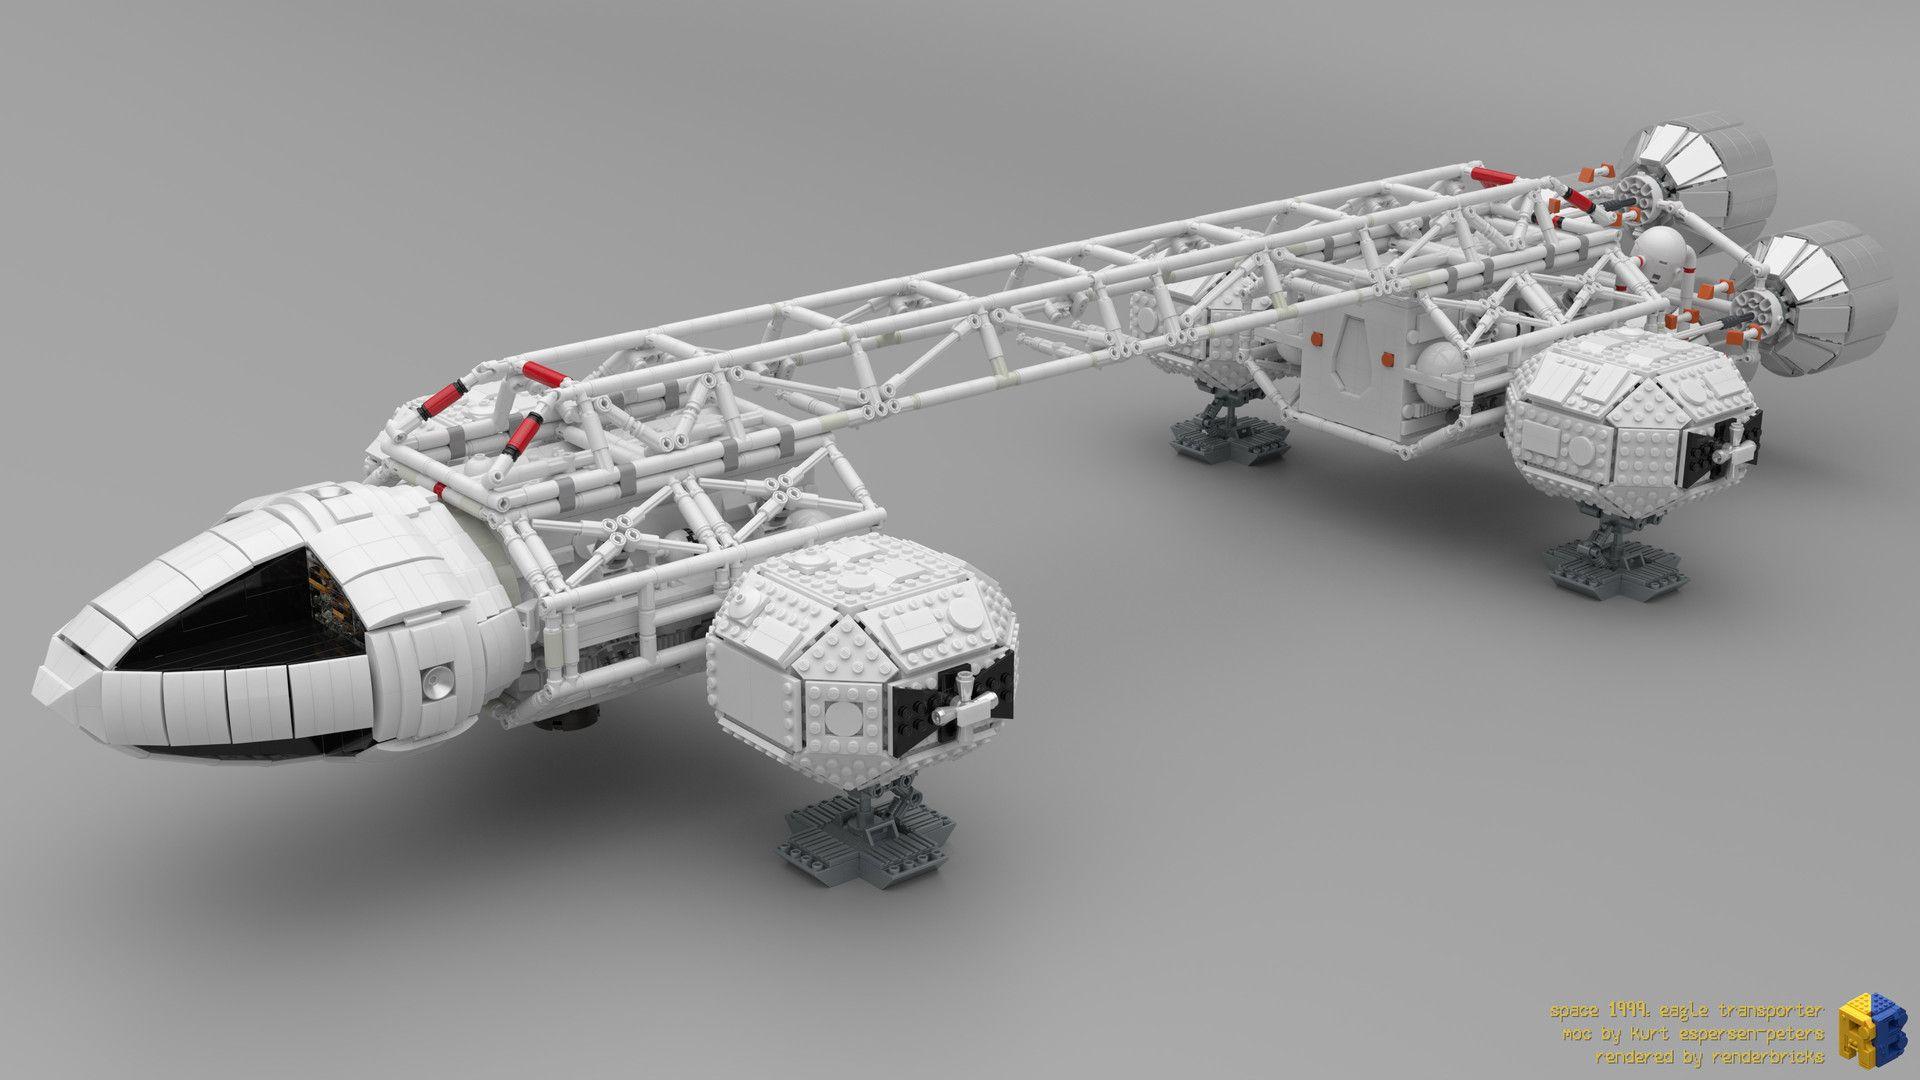 Space 1999: LEGO Eagle Transporter, Renderbricks ®